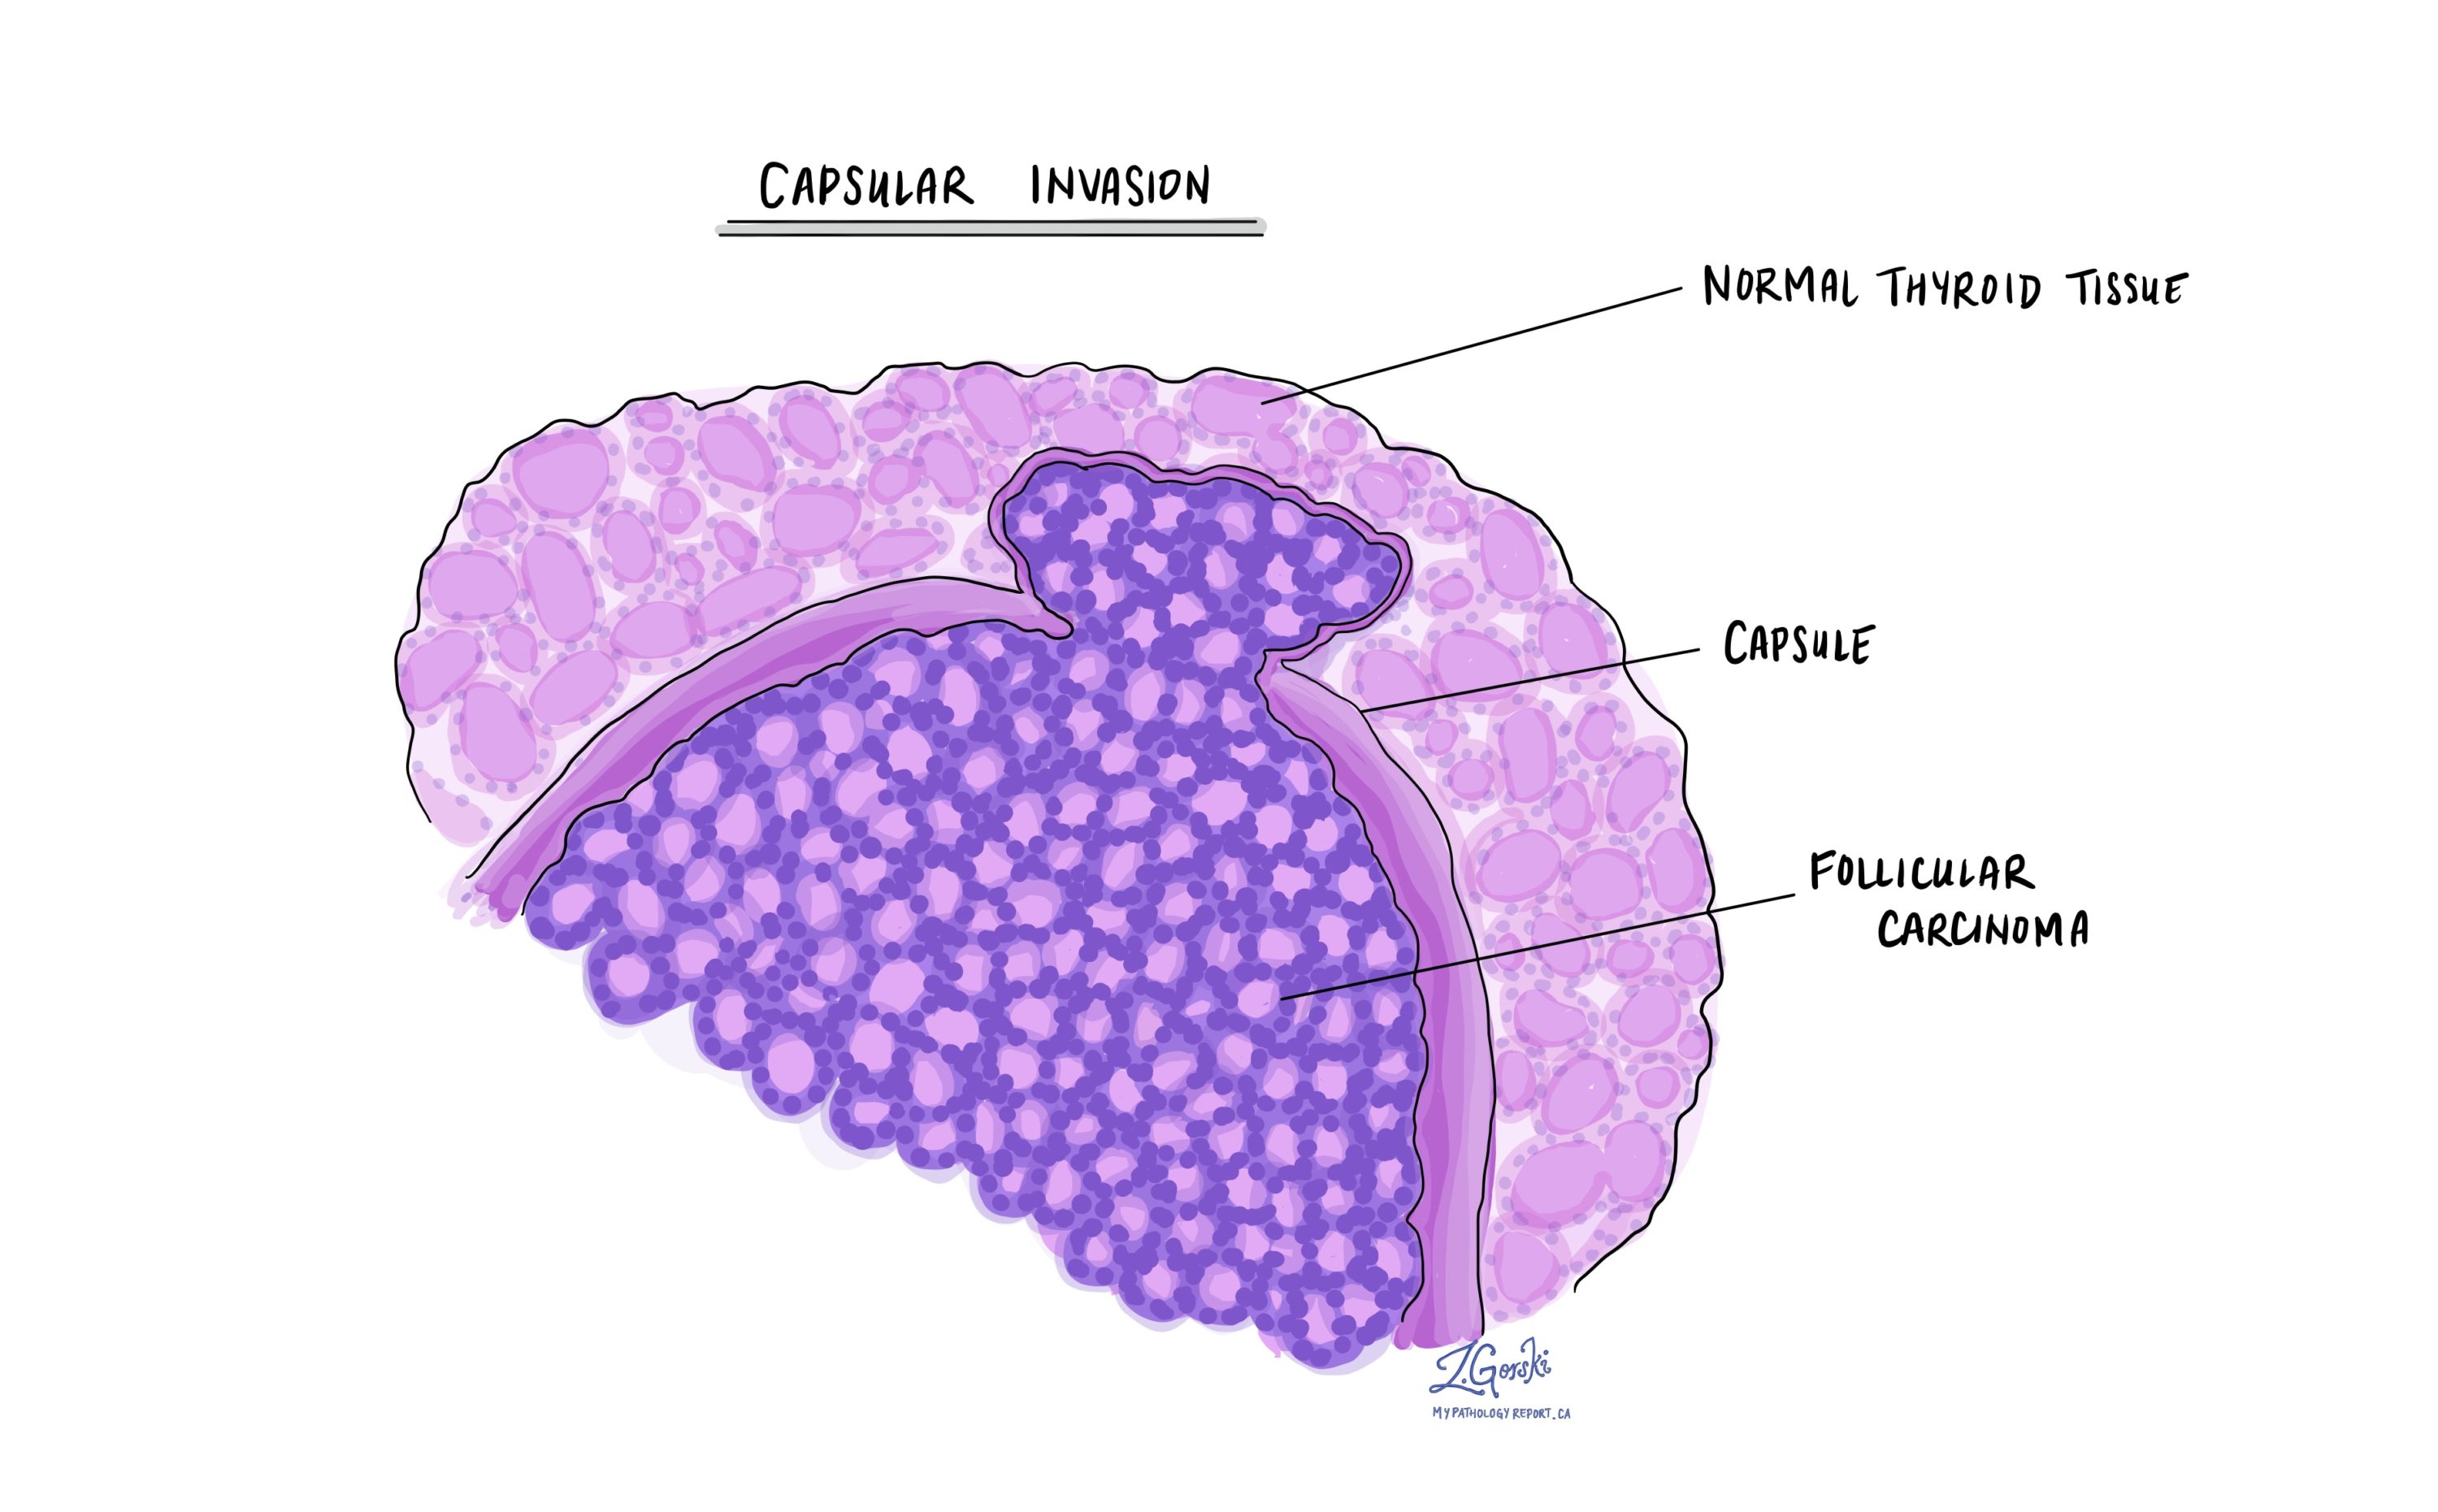 Follicular carcinoma - Thyroid - MyPathologyReport.ca
